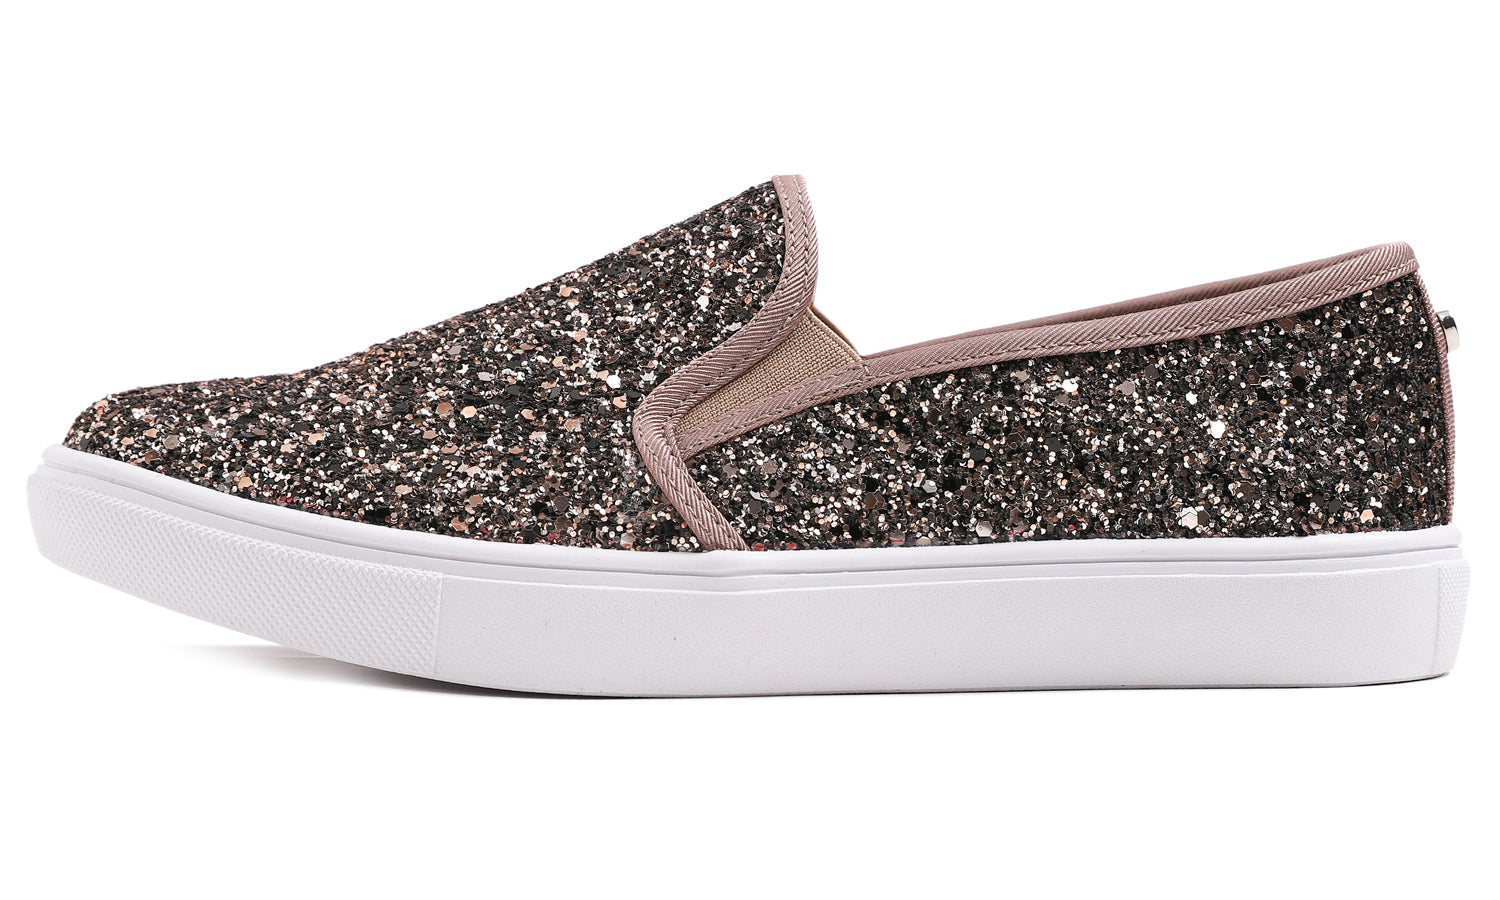 Feversole Women's Glitter Brown Slip On Sneaker Casual Flat Loafers